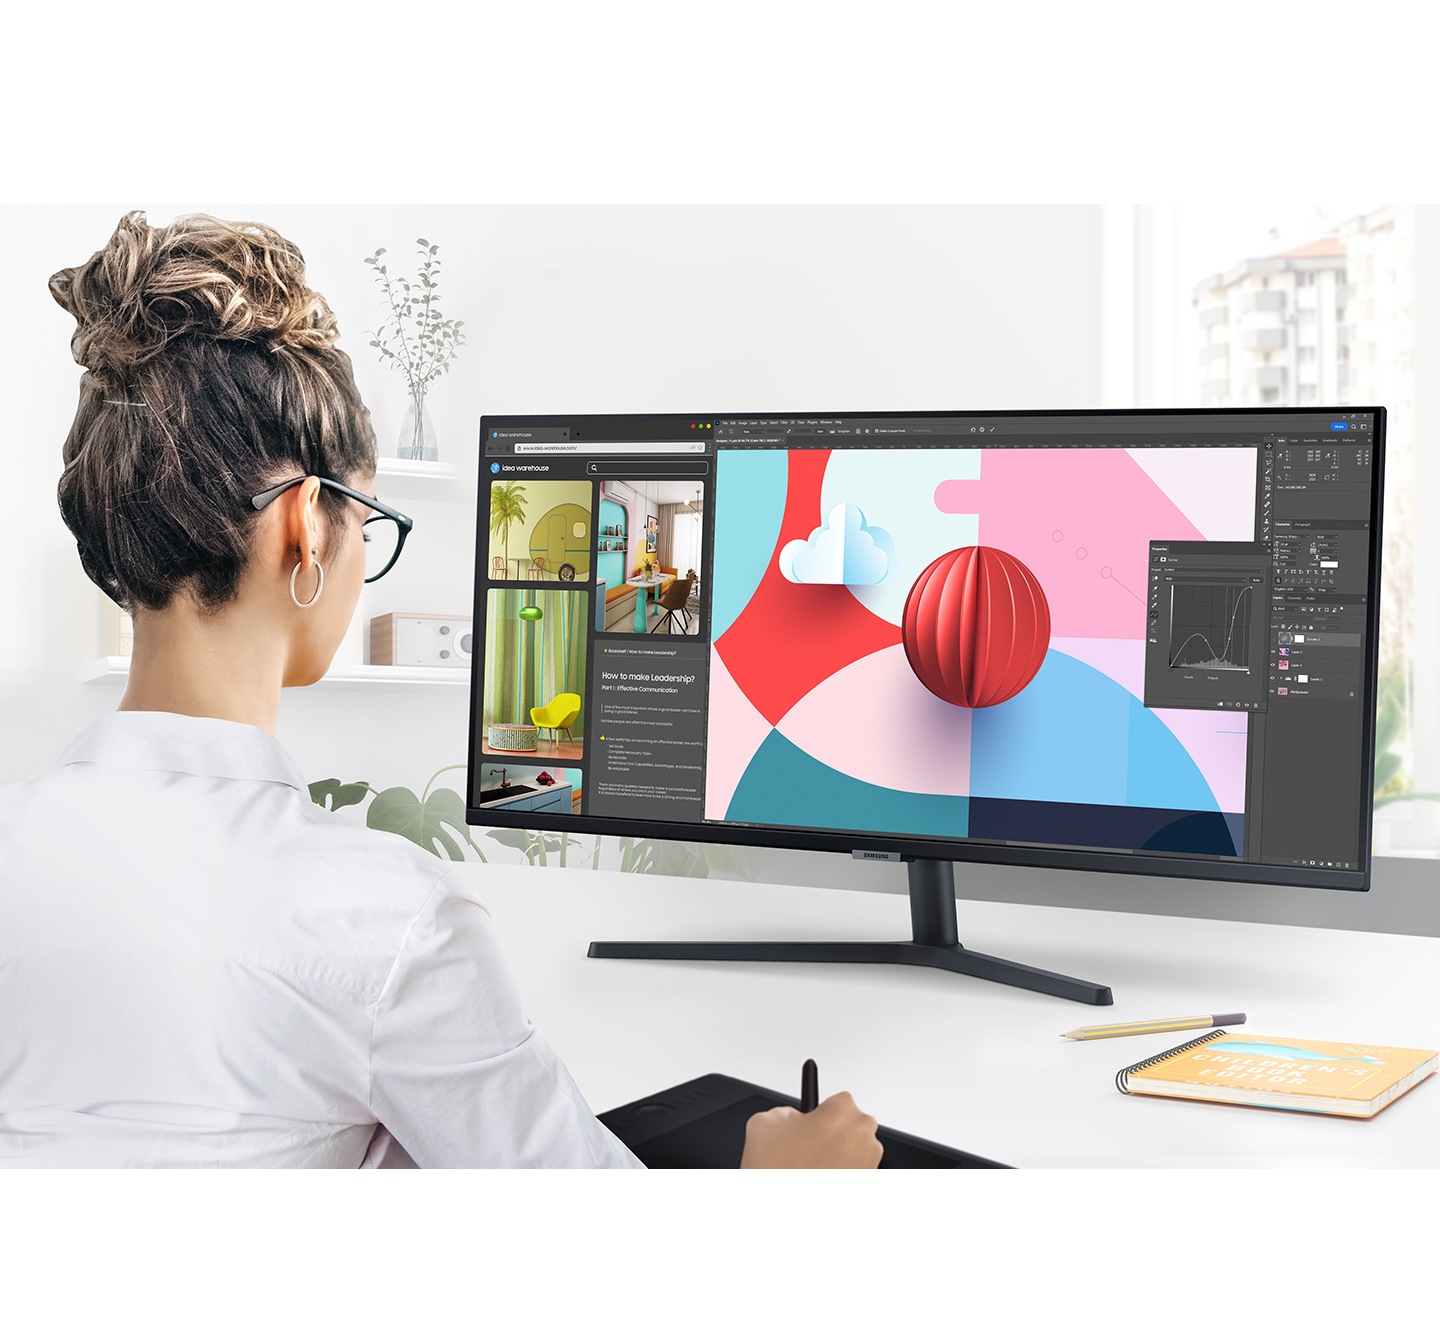 Monitorul S50GC de pe un birou afiseaza un program software de design pe ecranul larg.  Persoana care foloseste monitorul foloseste si un bloc de desen digital in timp ce lucreaza la proiectul de design.